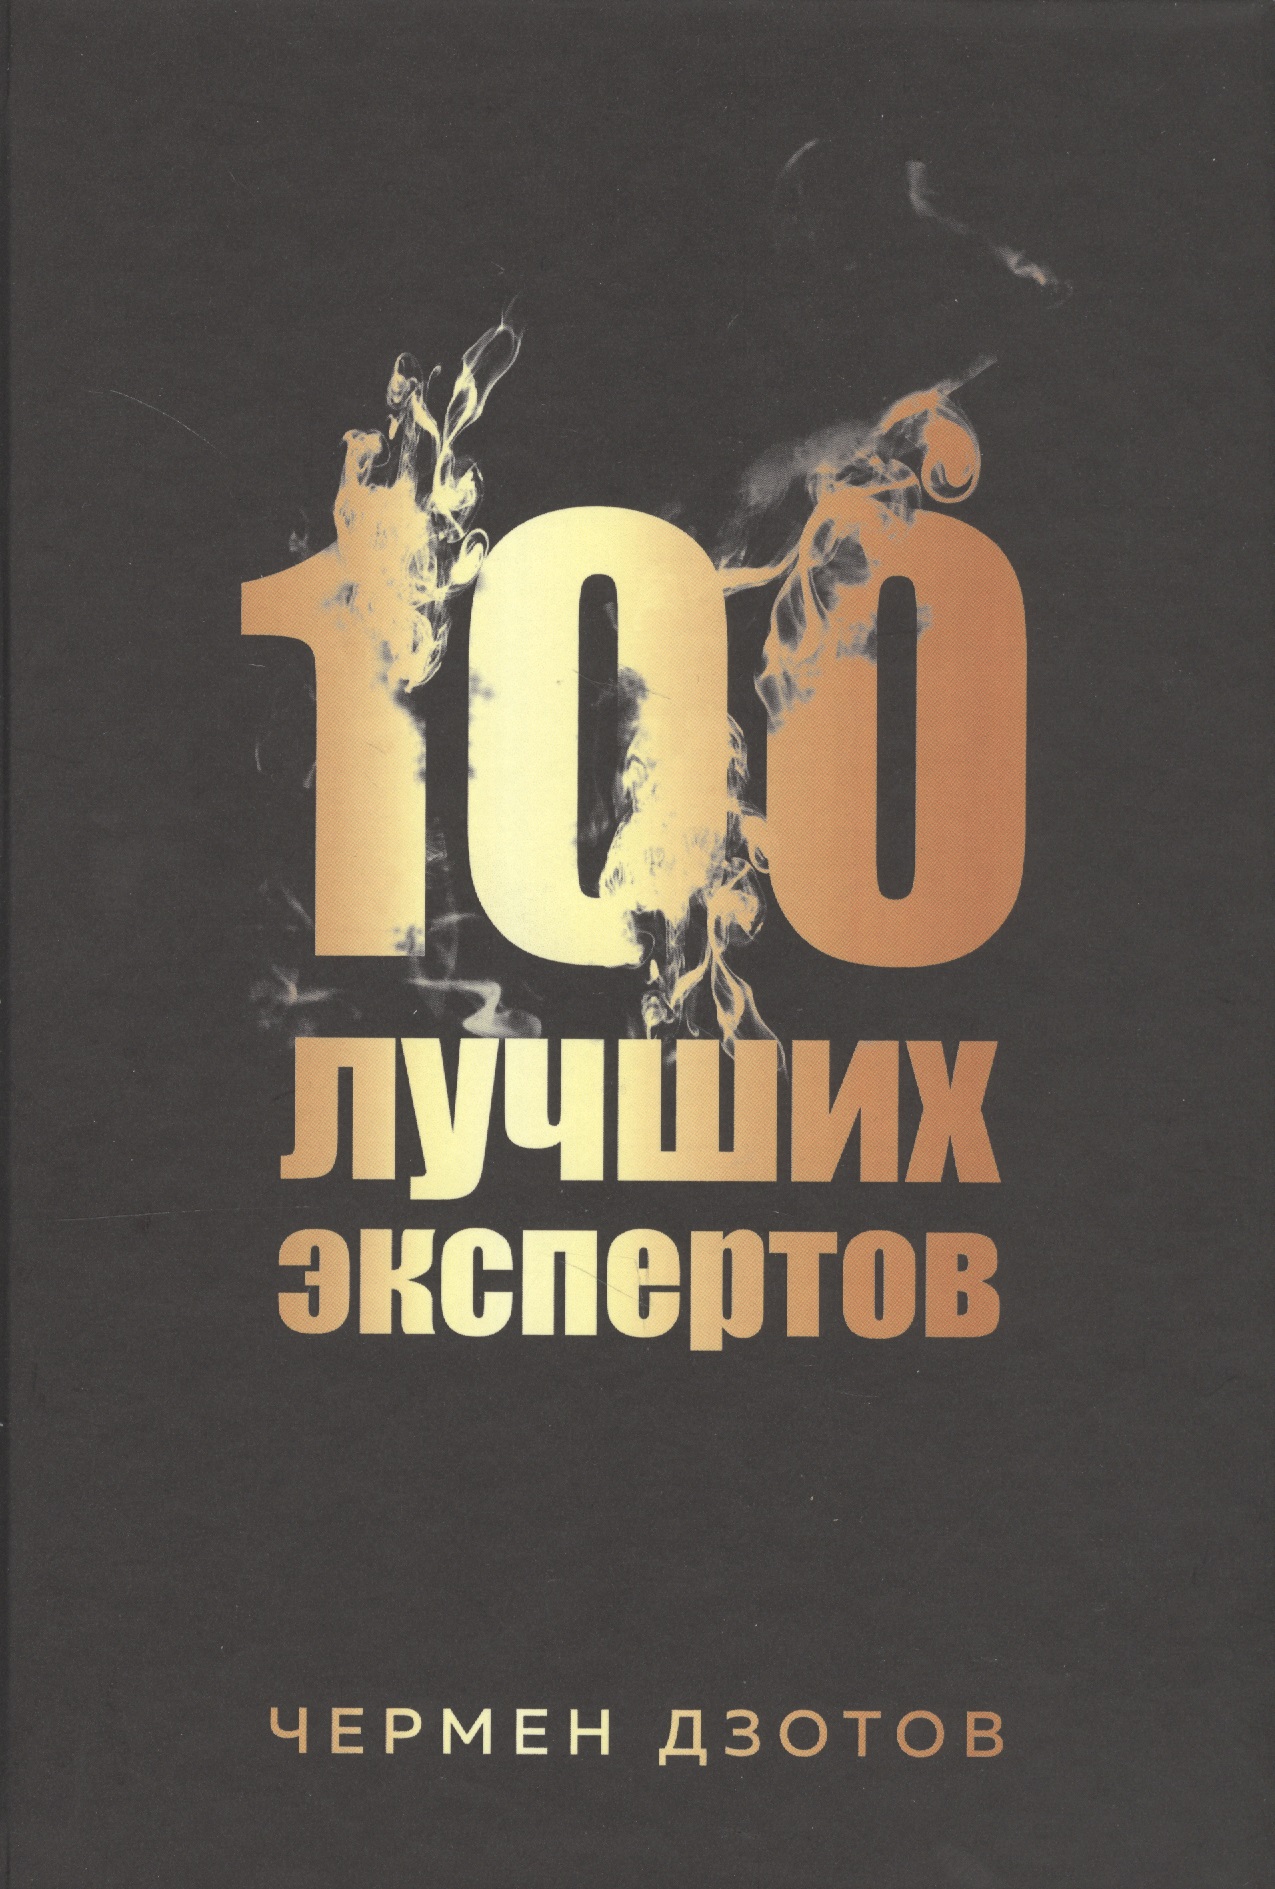 Дзотов Чермен 100 лучших экспертов